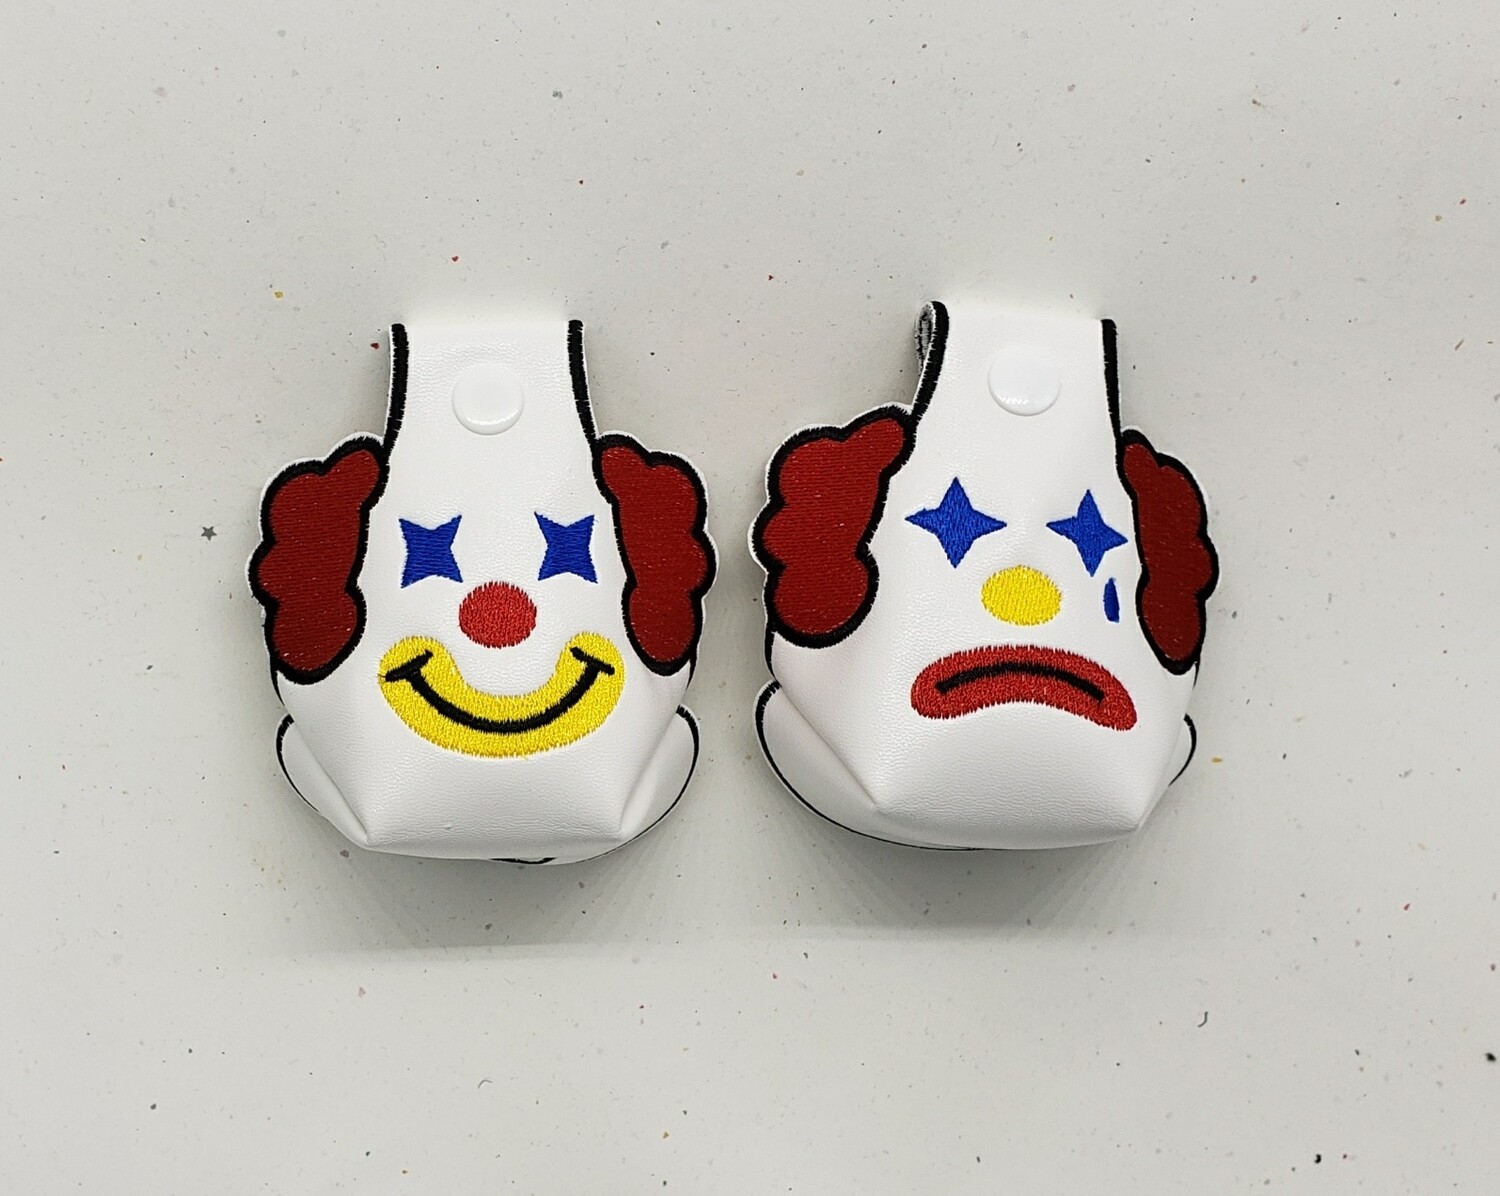 Clown toe guards